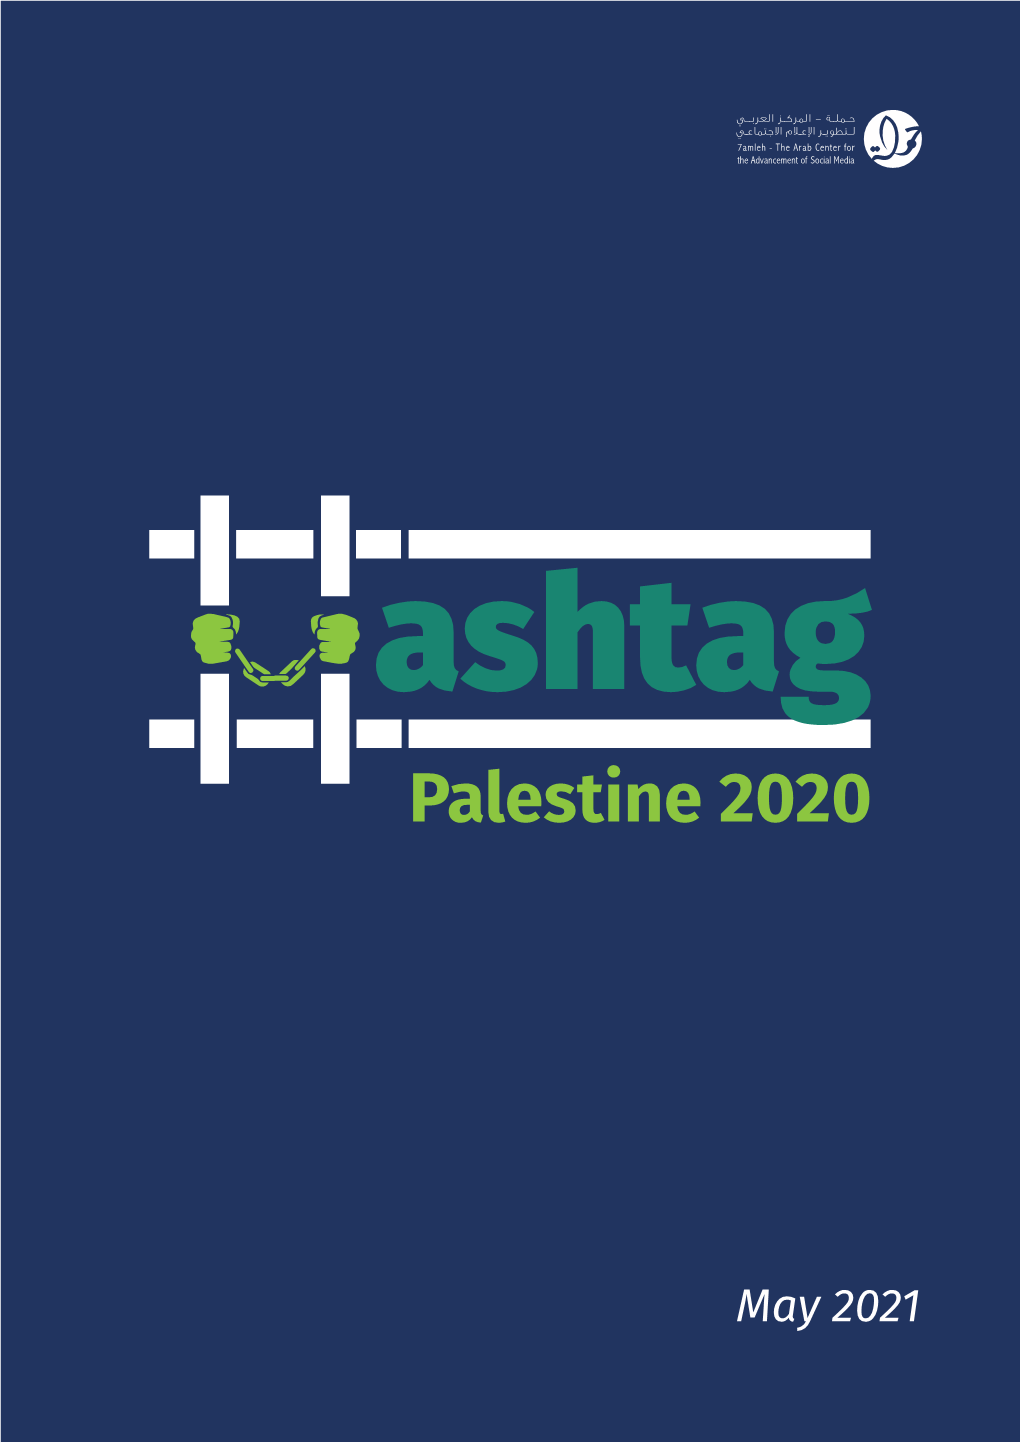 Hashtag Palestine 2020